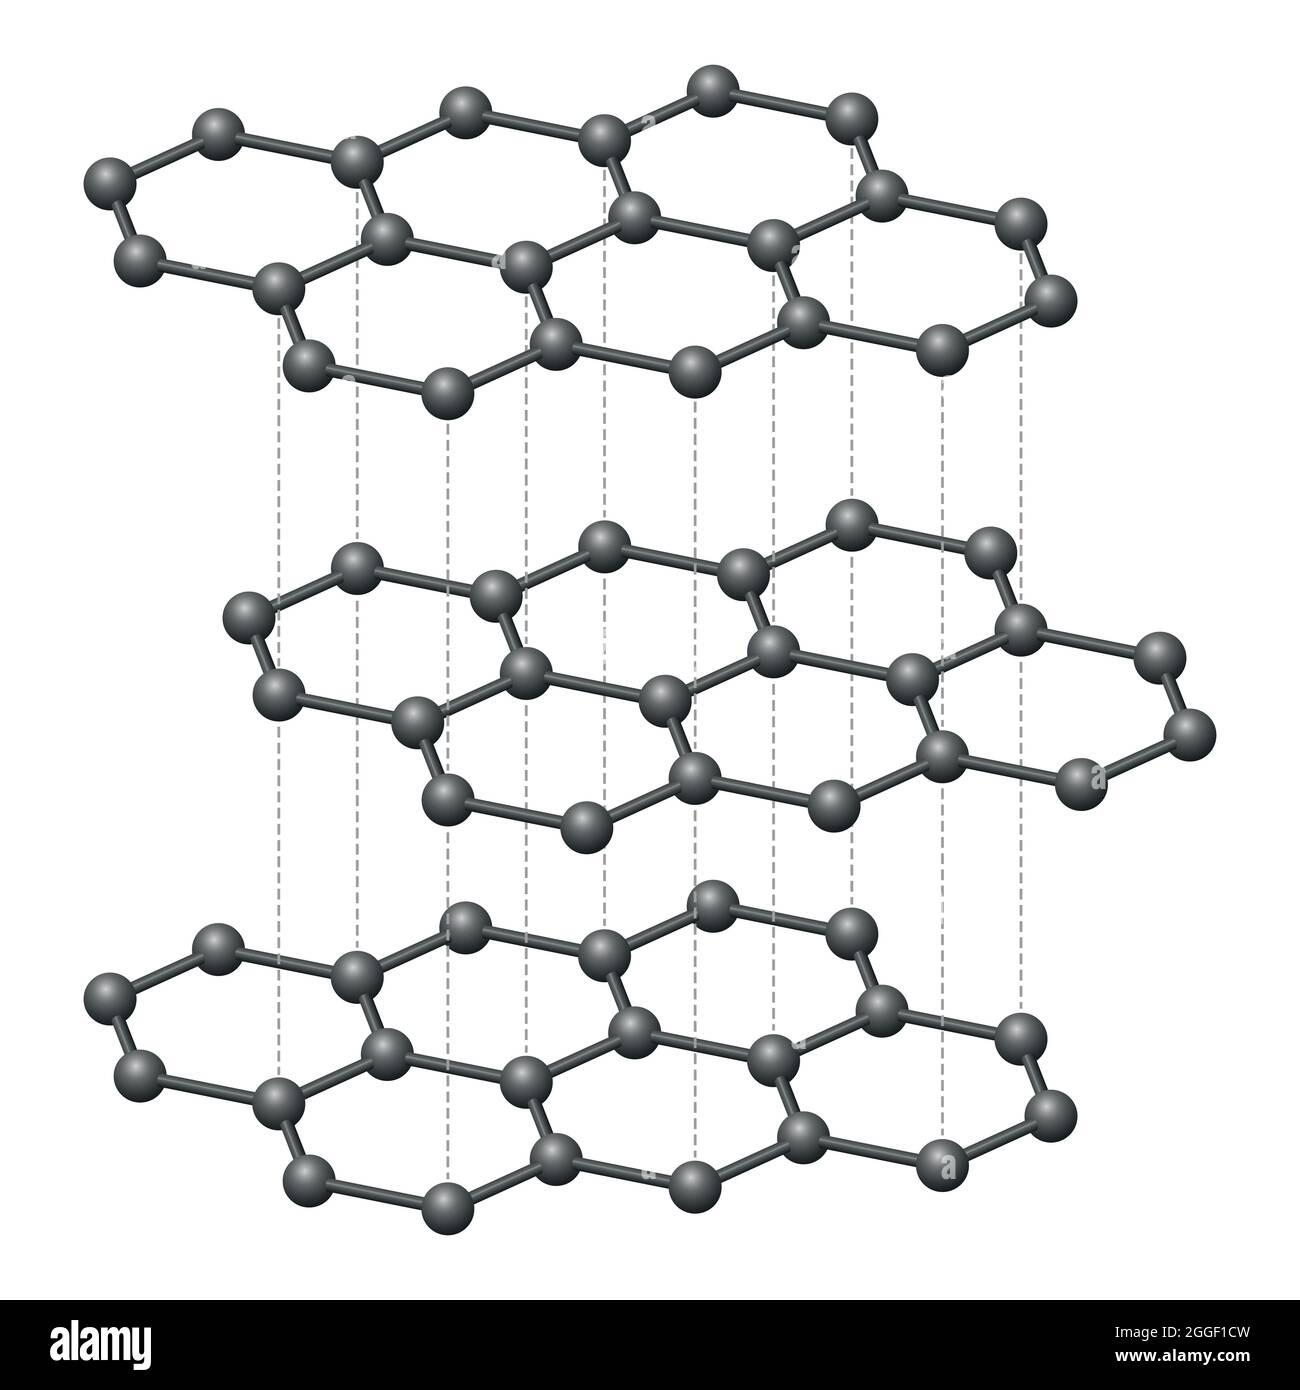 Strati di grafite, schema tridimensionale. Forma cristallina di atomi di carbonio, disposti esagonalmente, formando strati reticolari piani a nido d'ape. Foto Stock